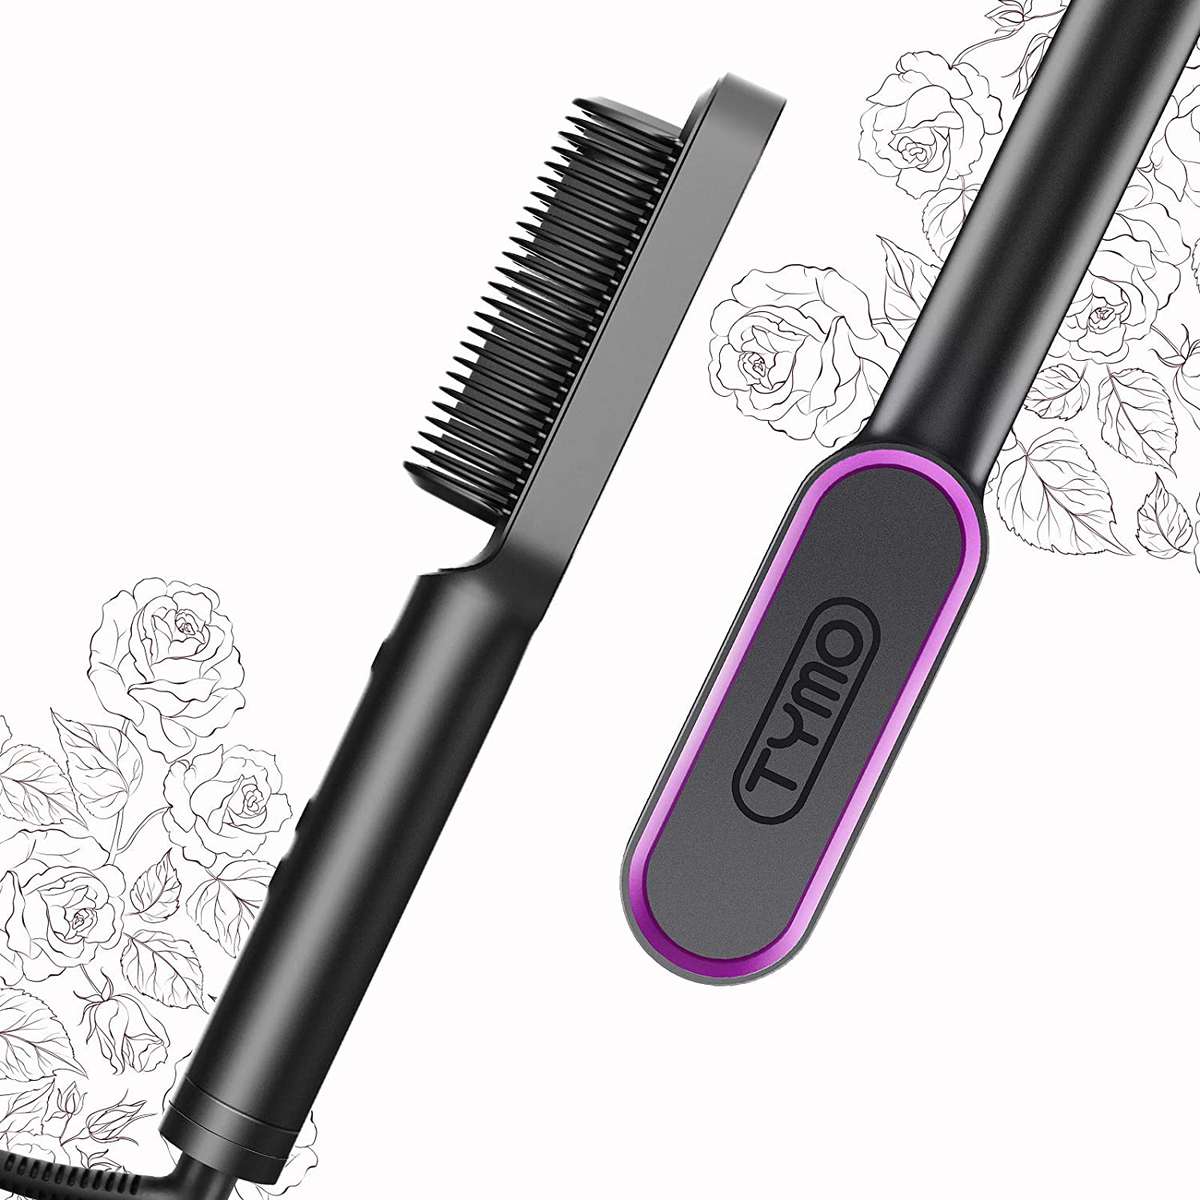 Tymo hair straightener brush